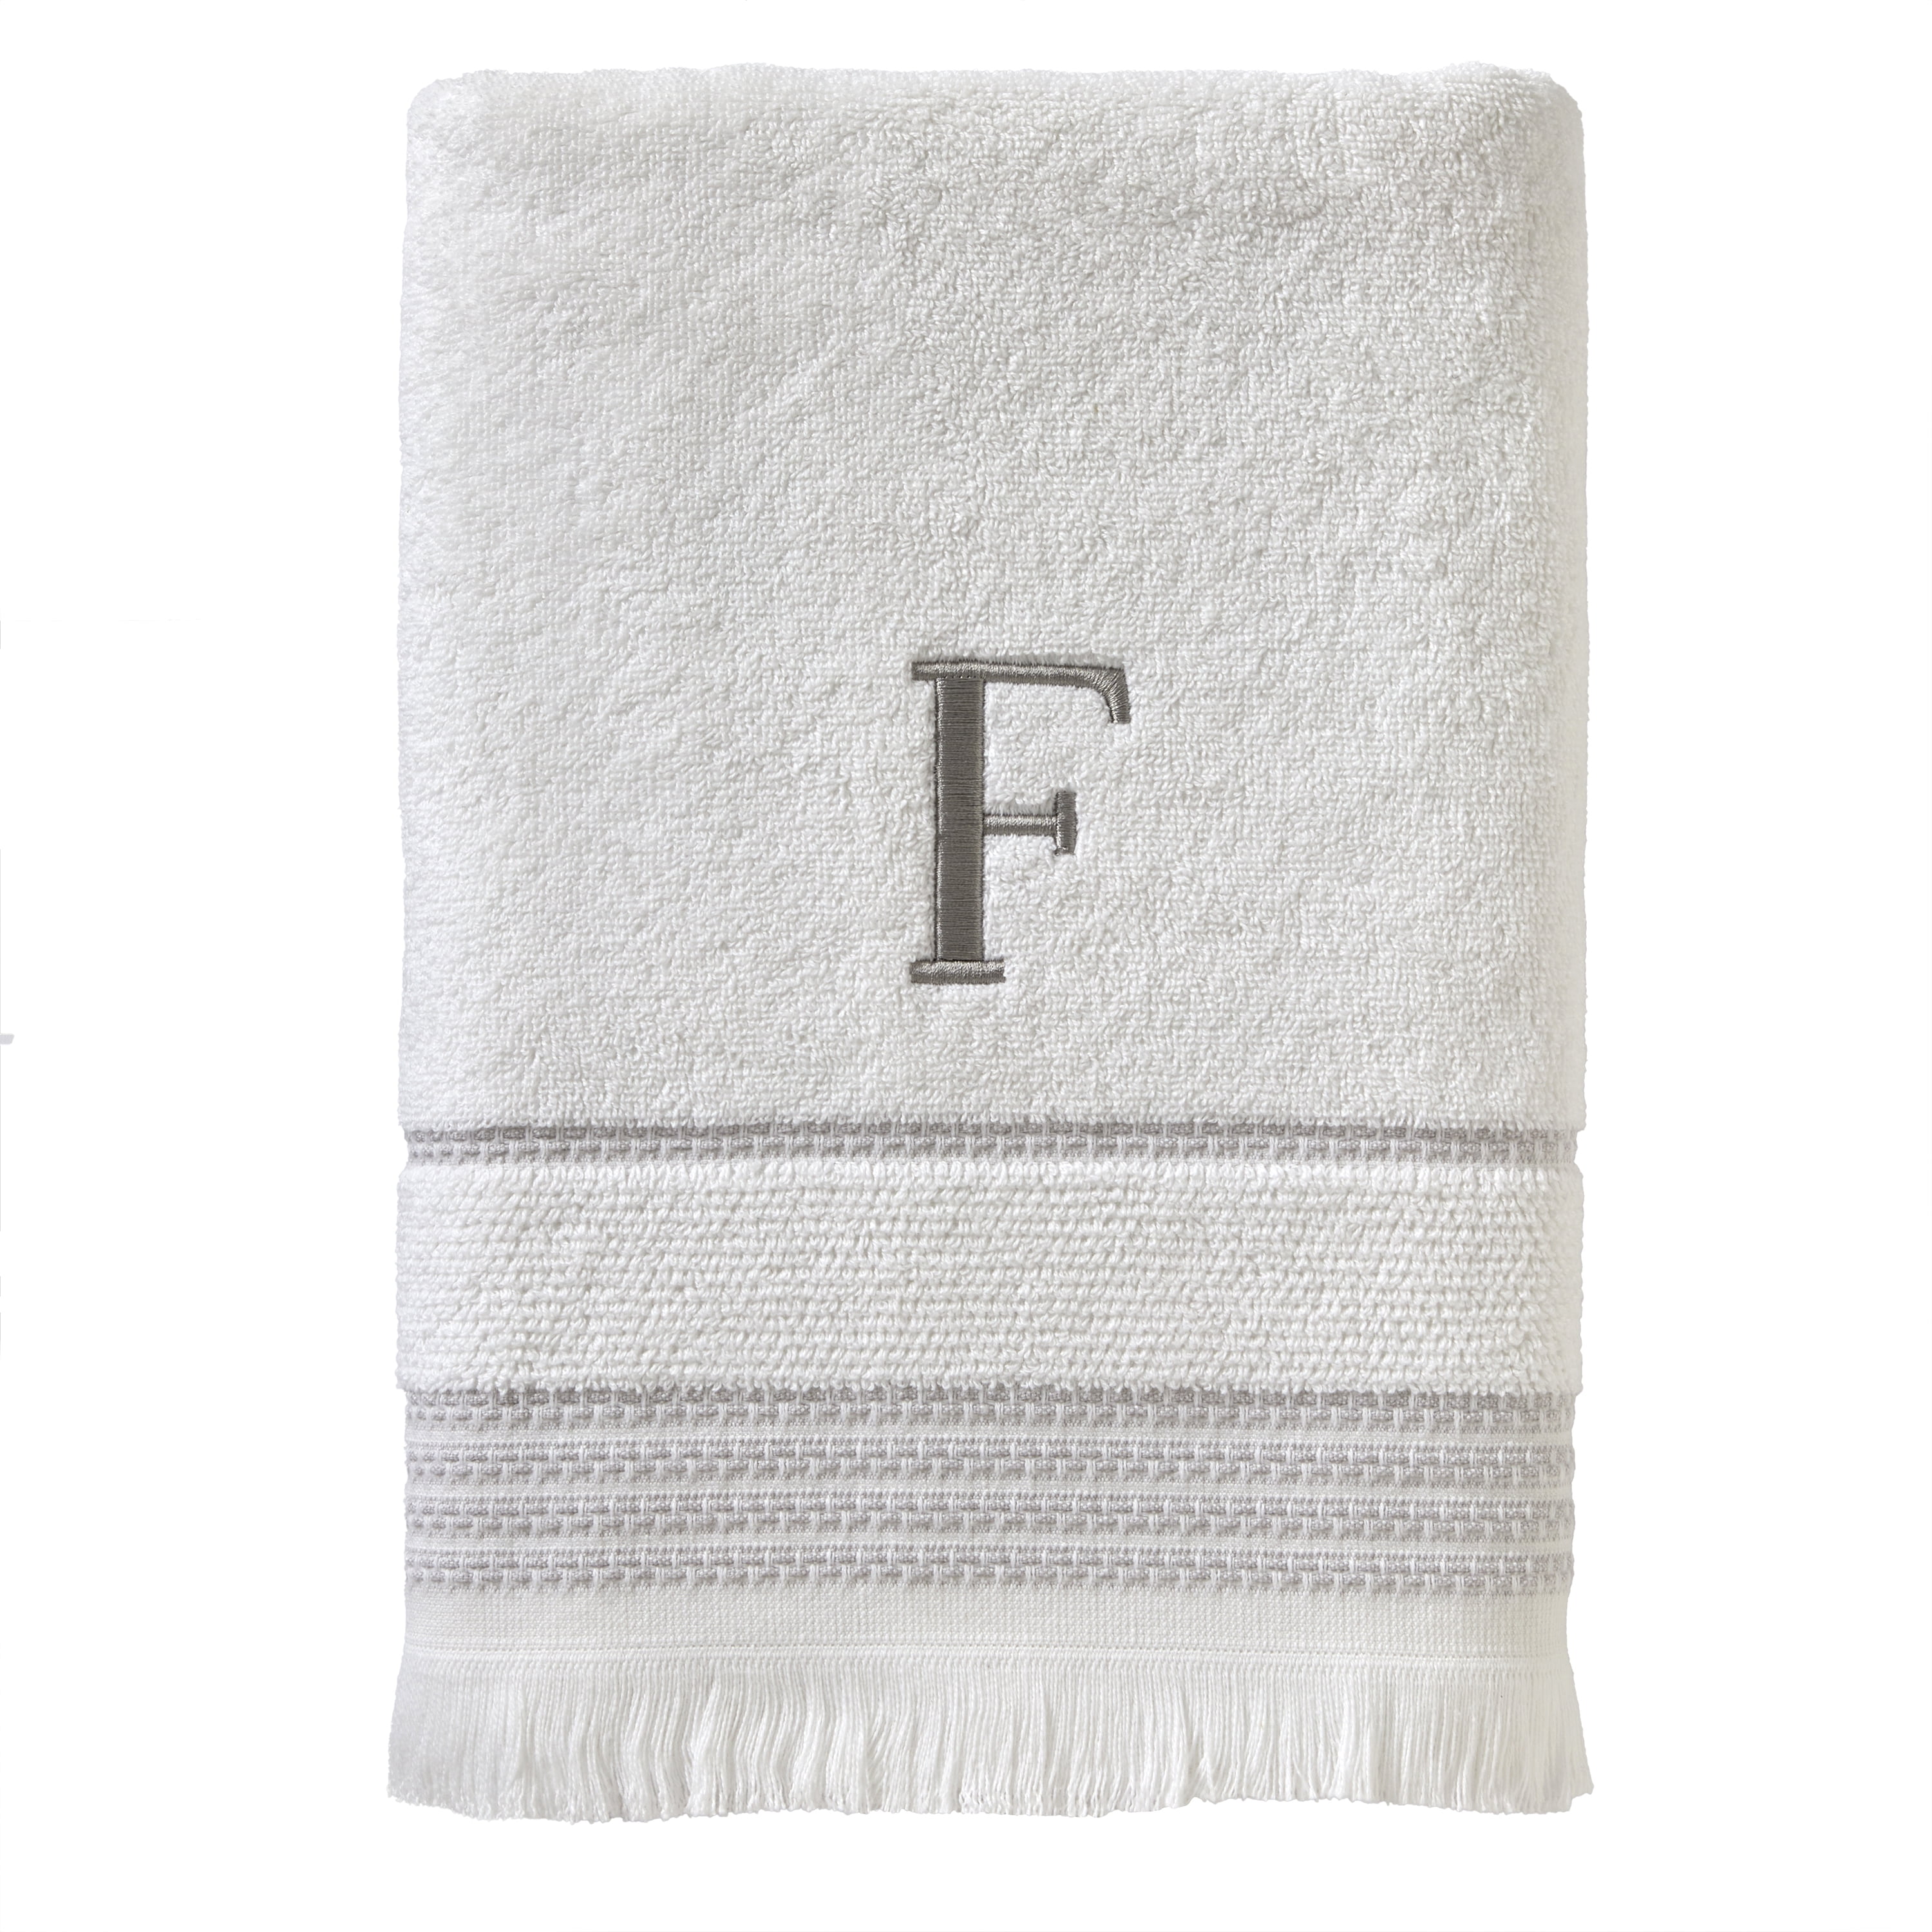 33*72cm Home Men Women Soft Cotton Face Cloth Dormitory Bathroom Face Towel 